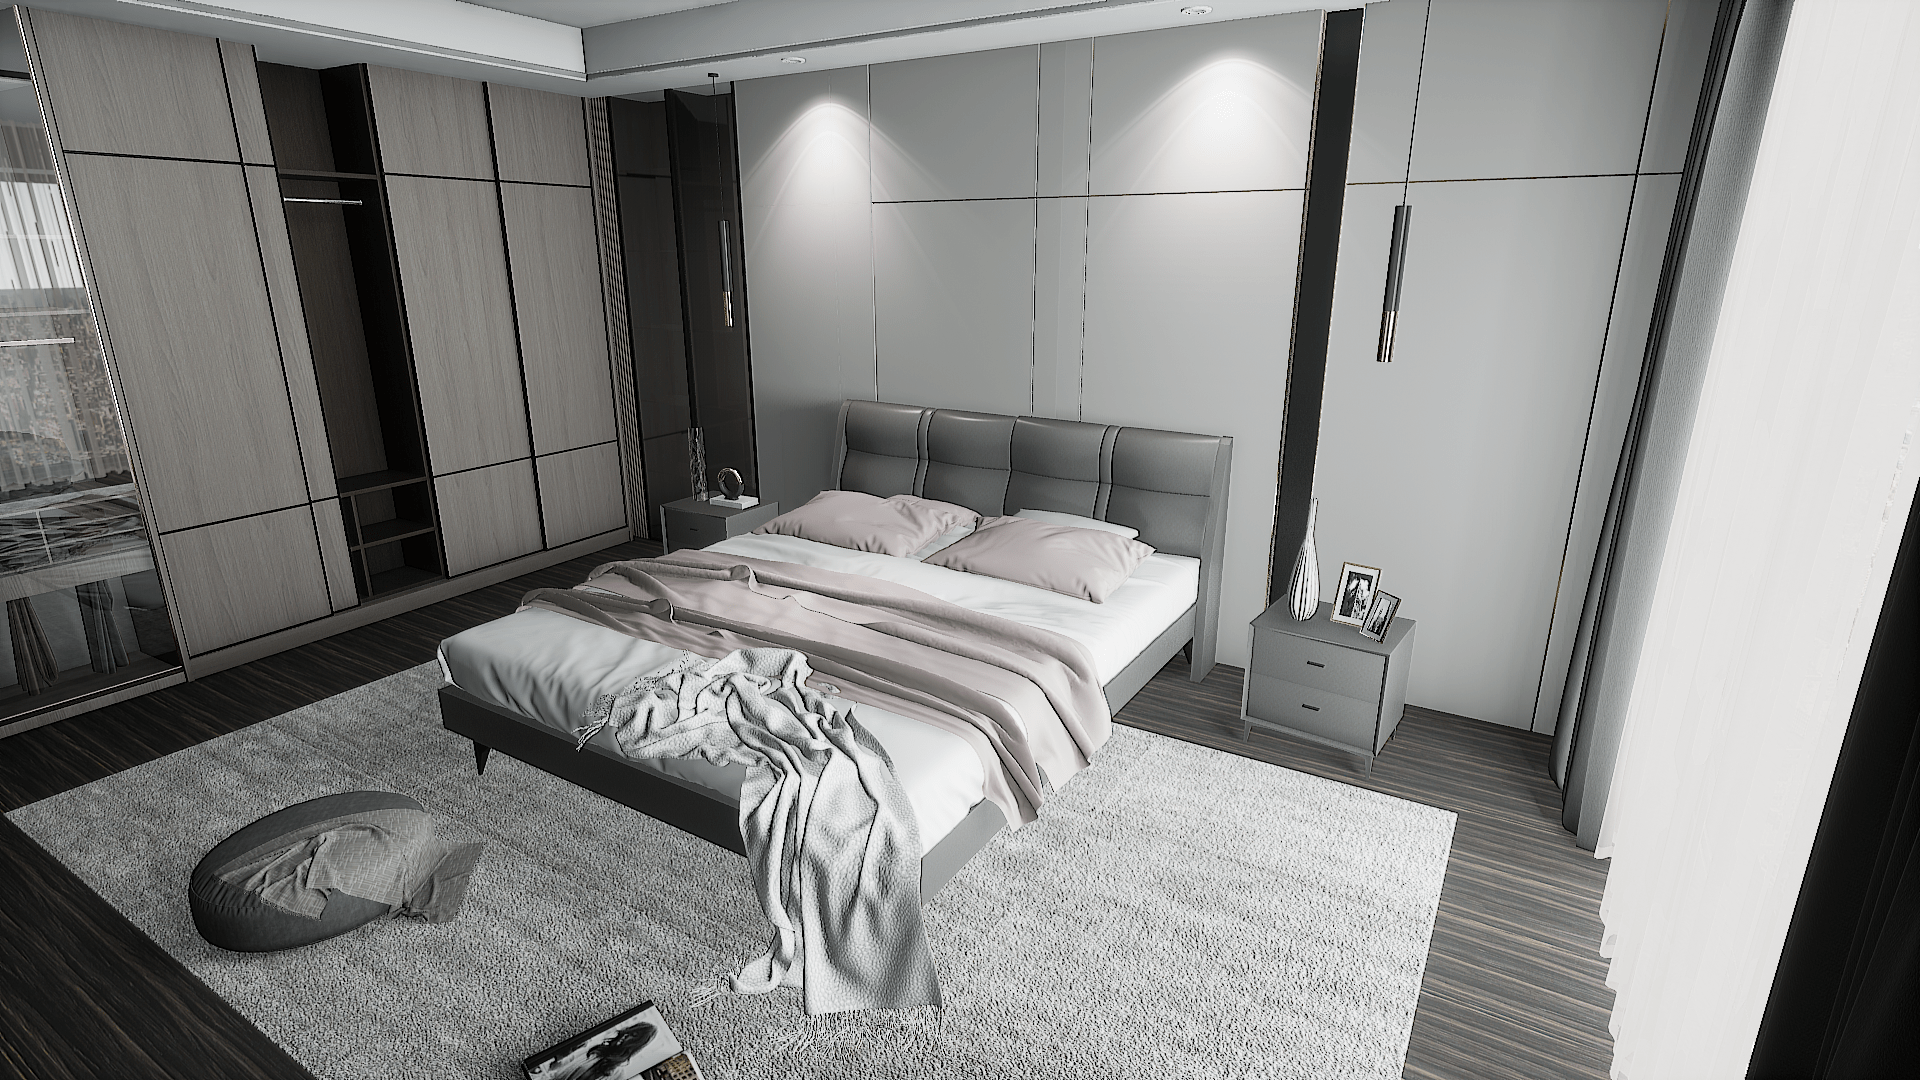 黑色金属包边增加了精致感卧室更多的强调舒适感,加入原木色地板的